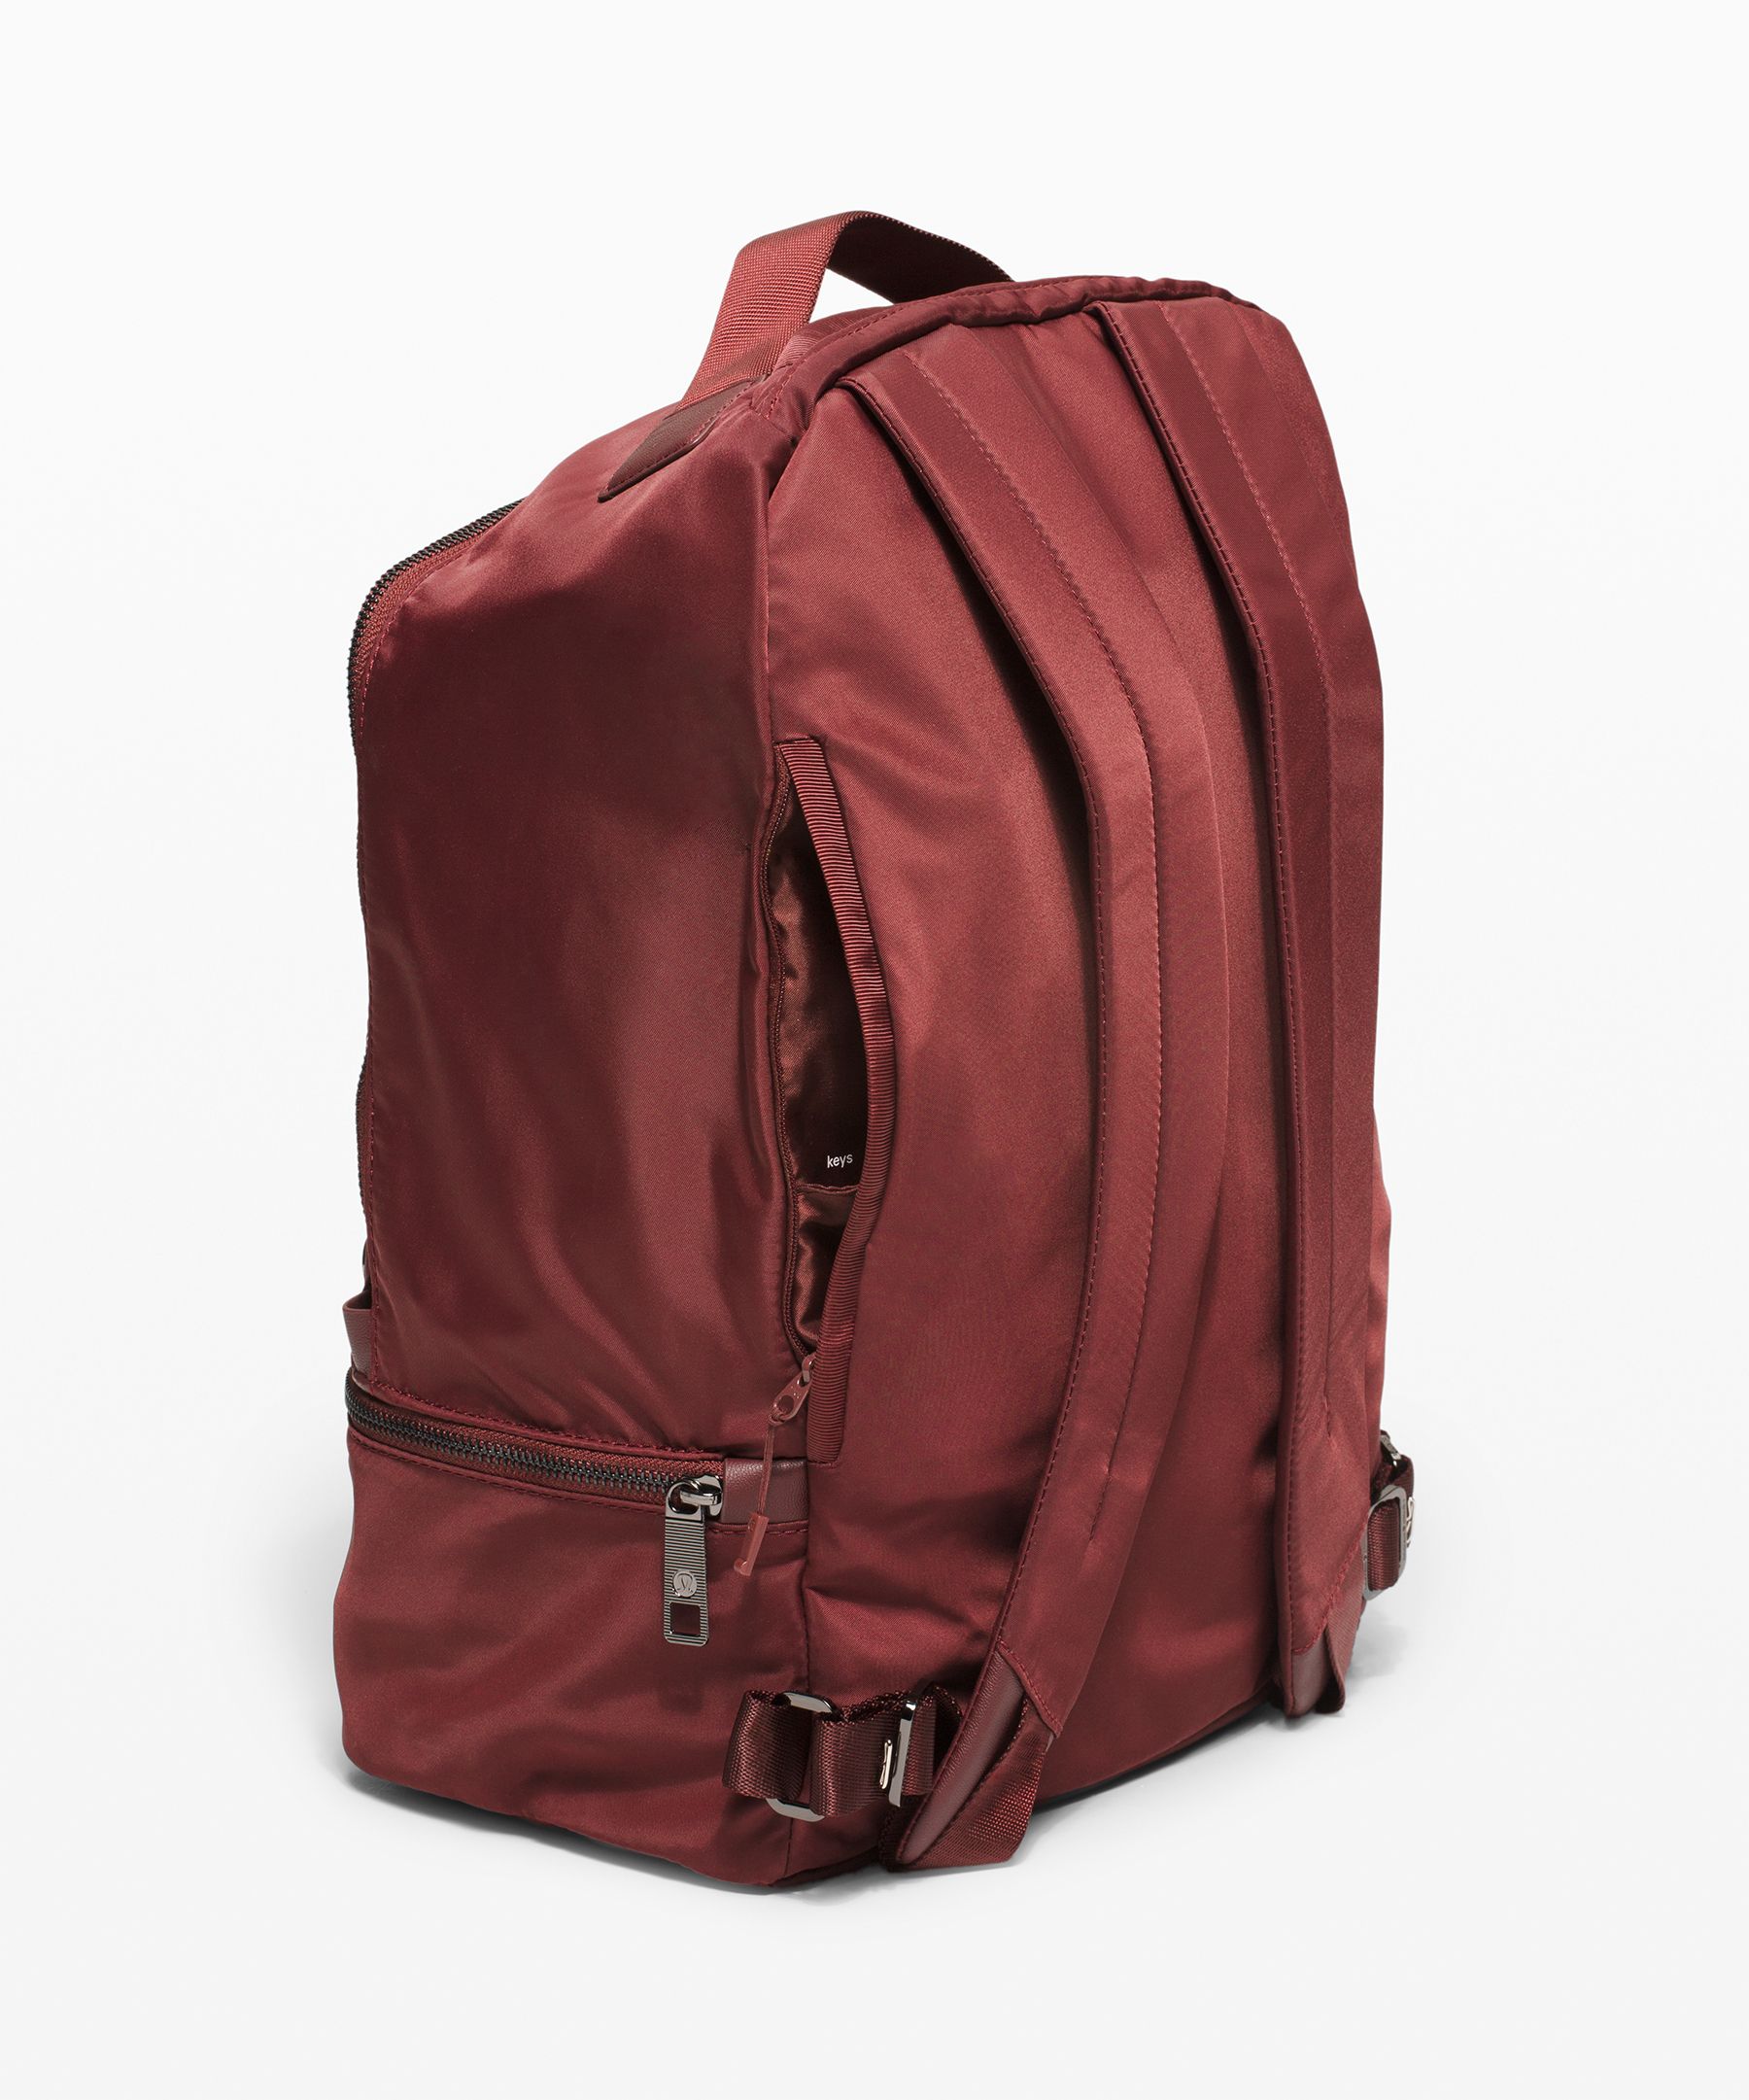 lululemon city adventurer backpack large